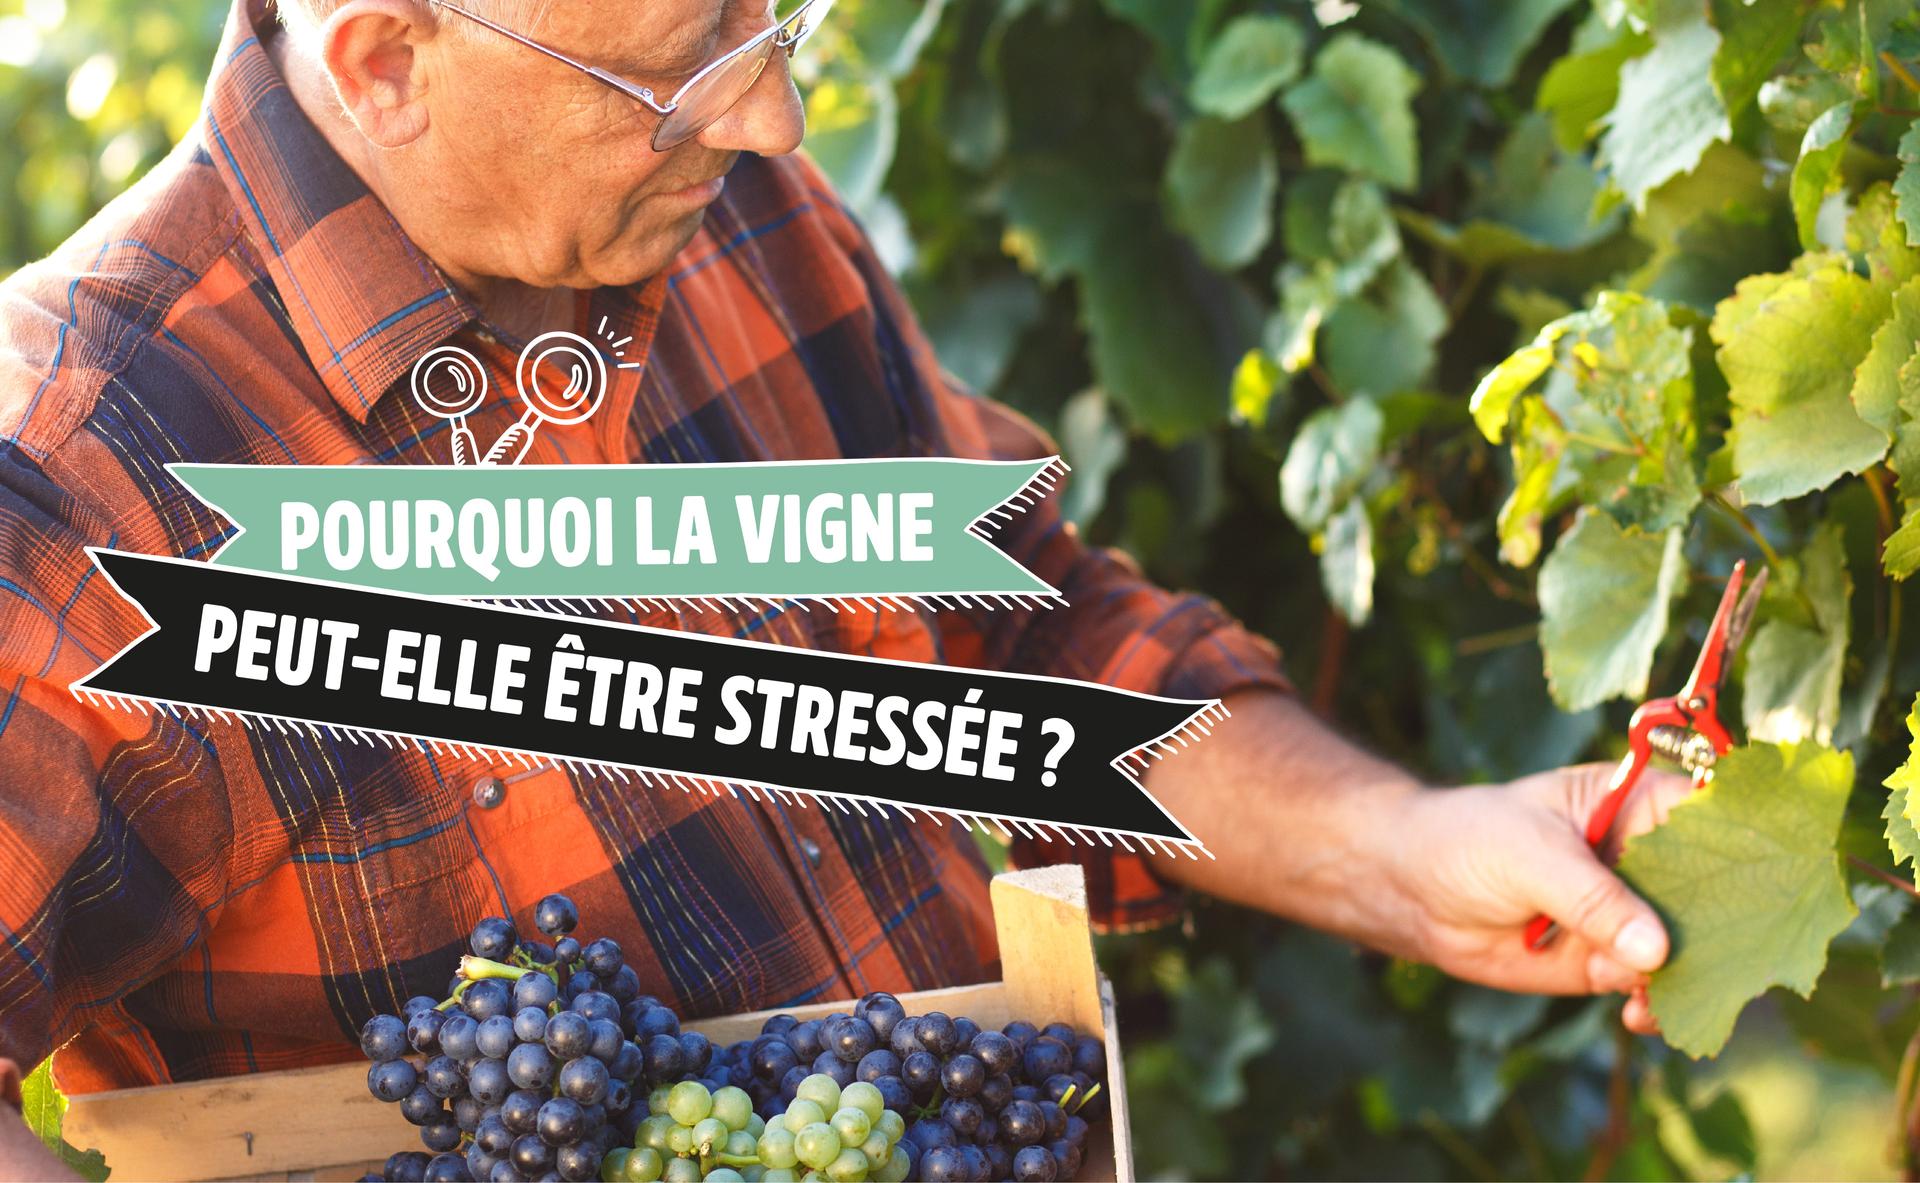 La vigne peut-elle être stressée ?